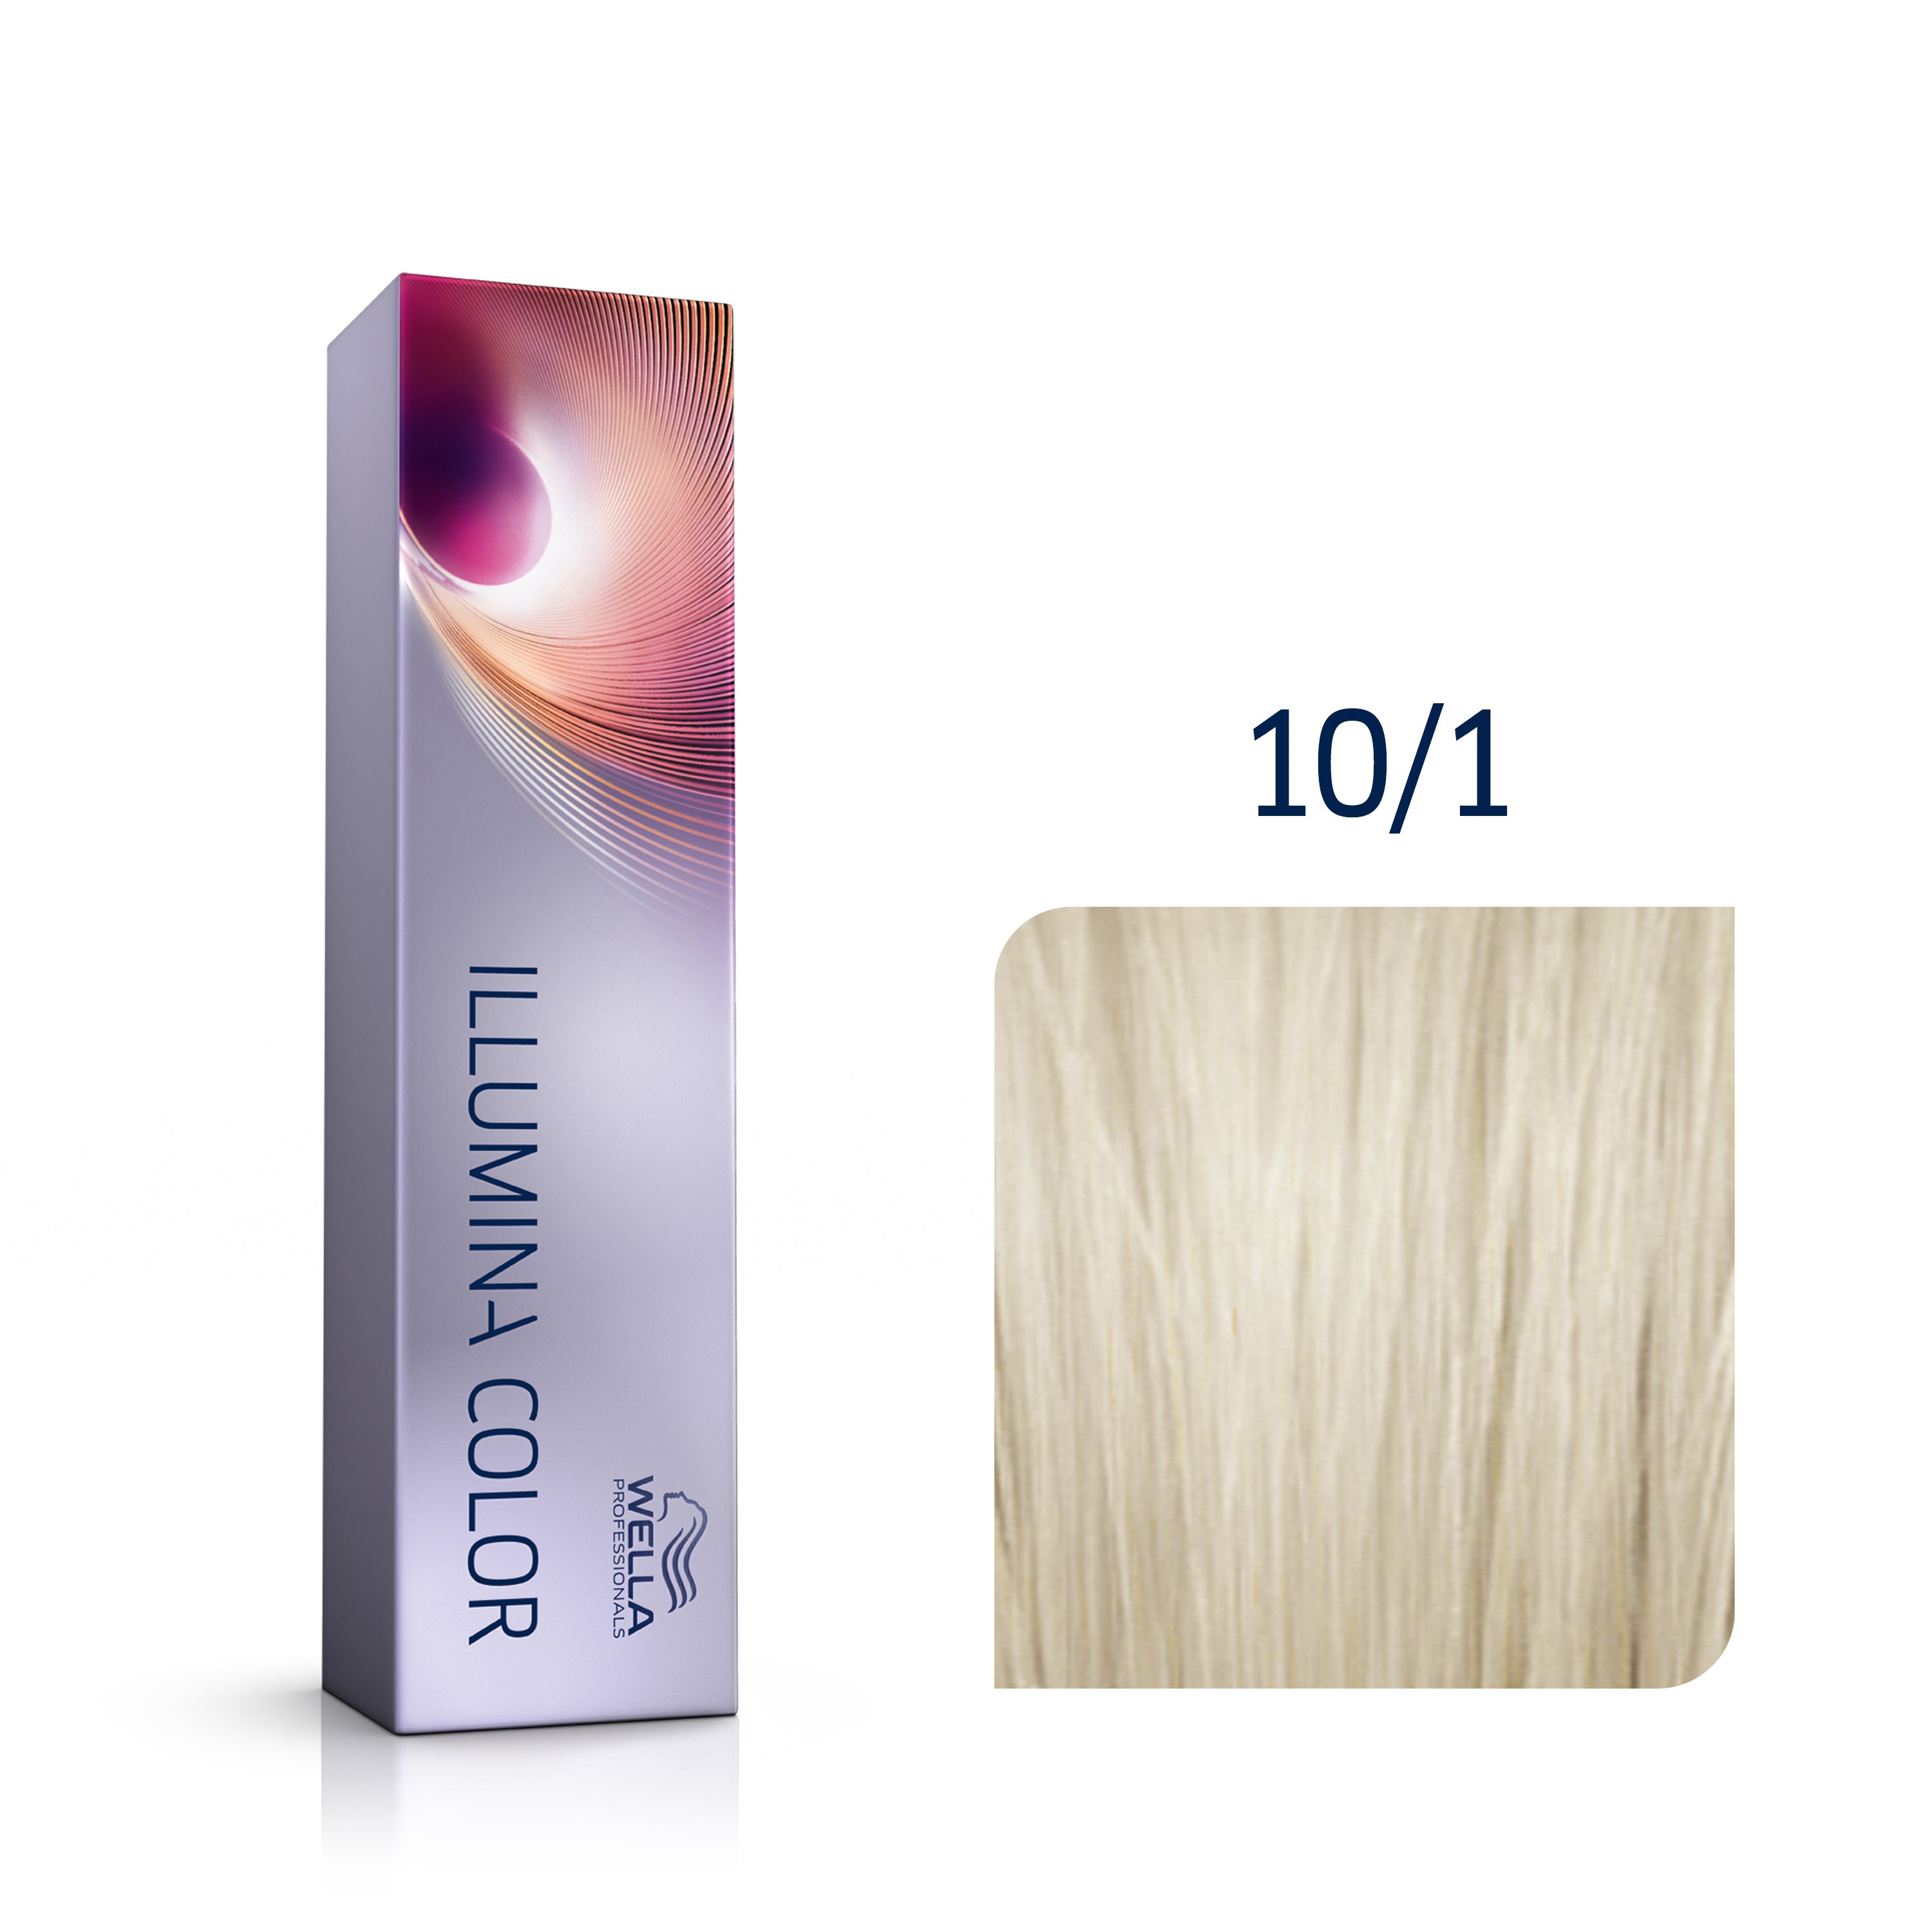 Wella Professional Illumina 10/1 ljus-ljusblond / ask 60 ml